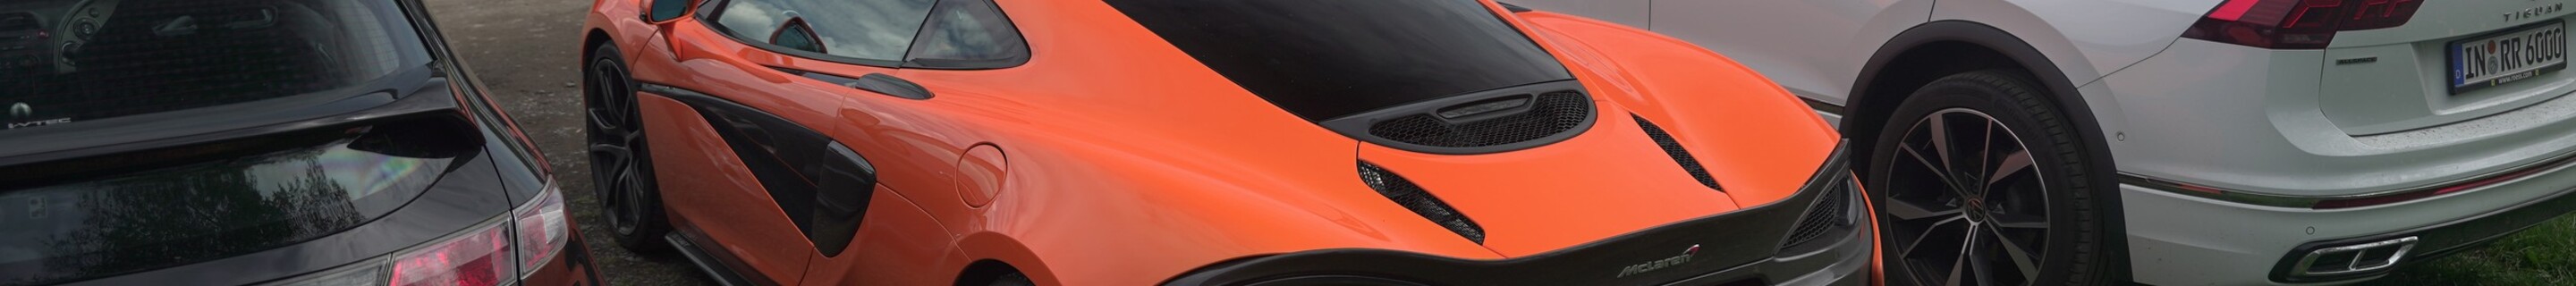 McLaren 570GT